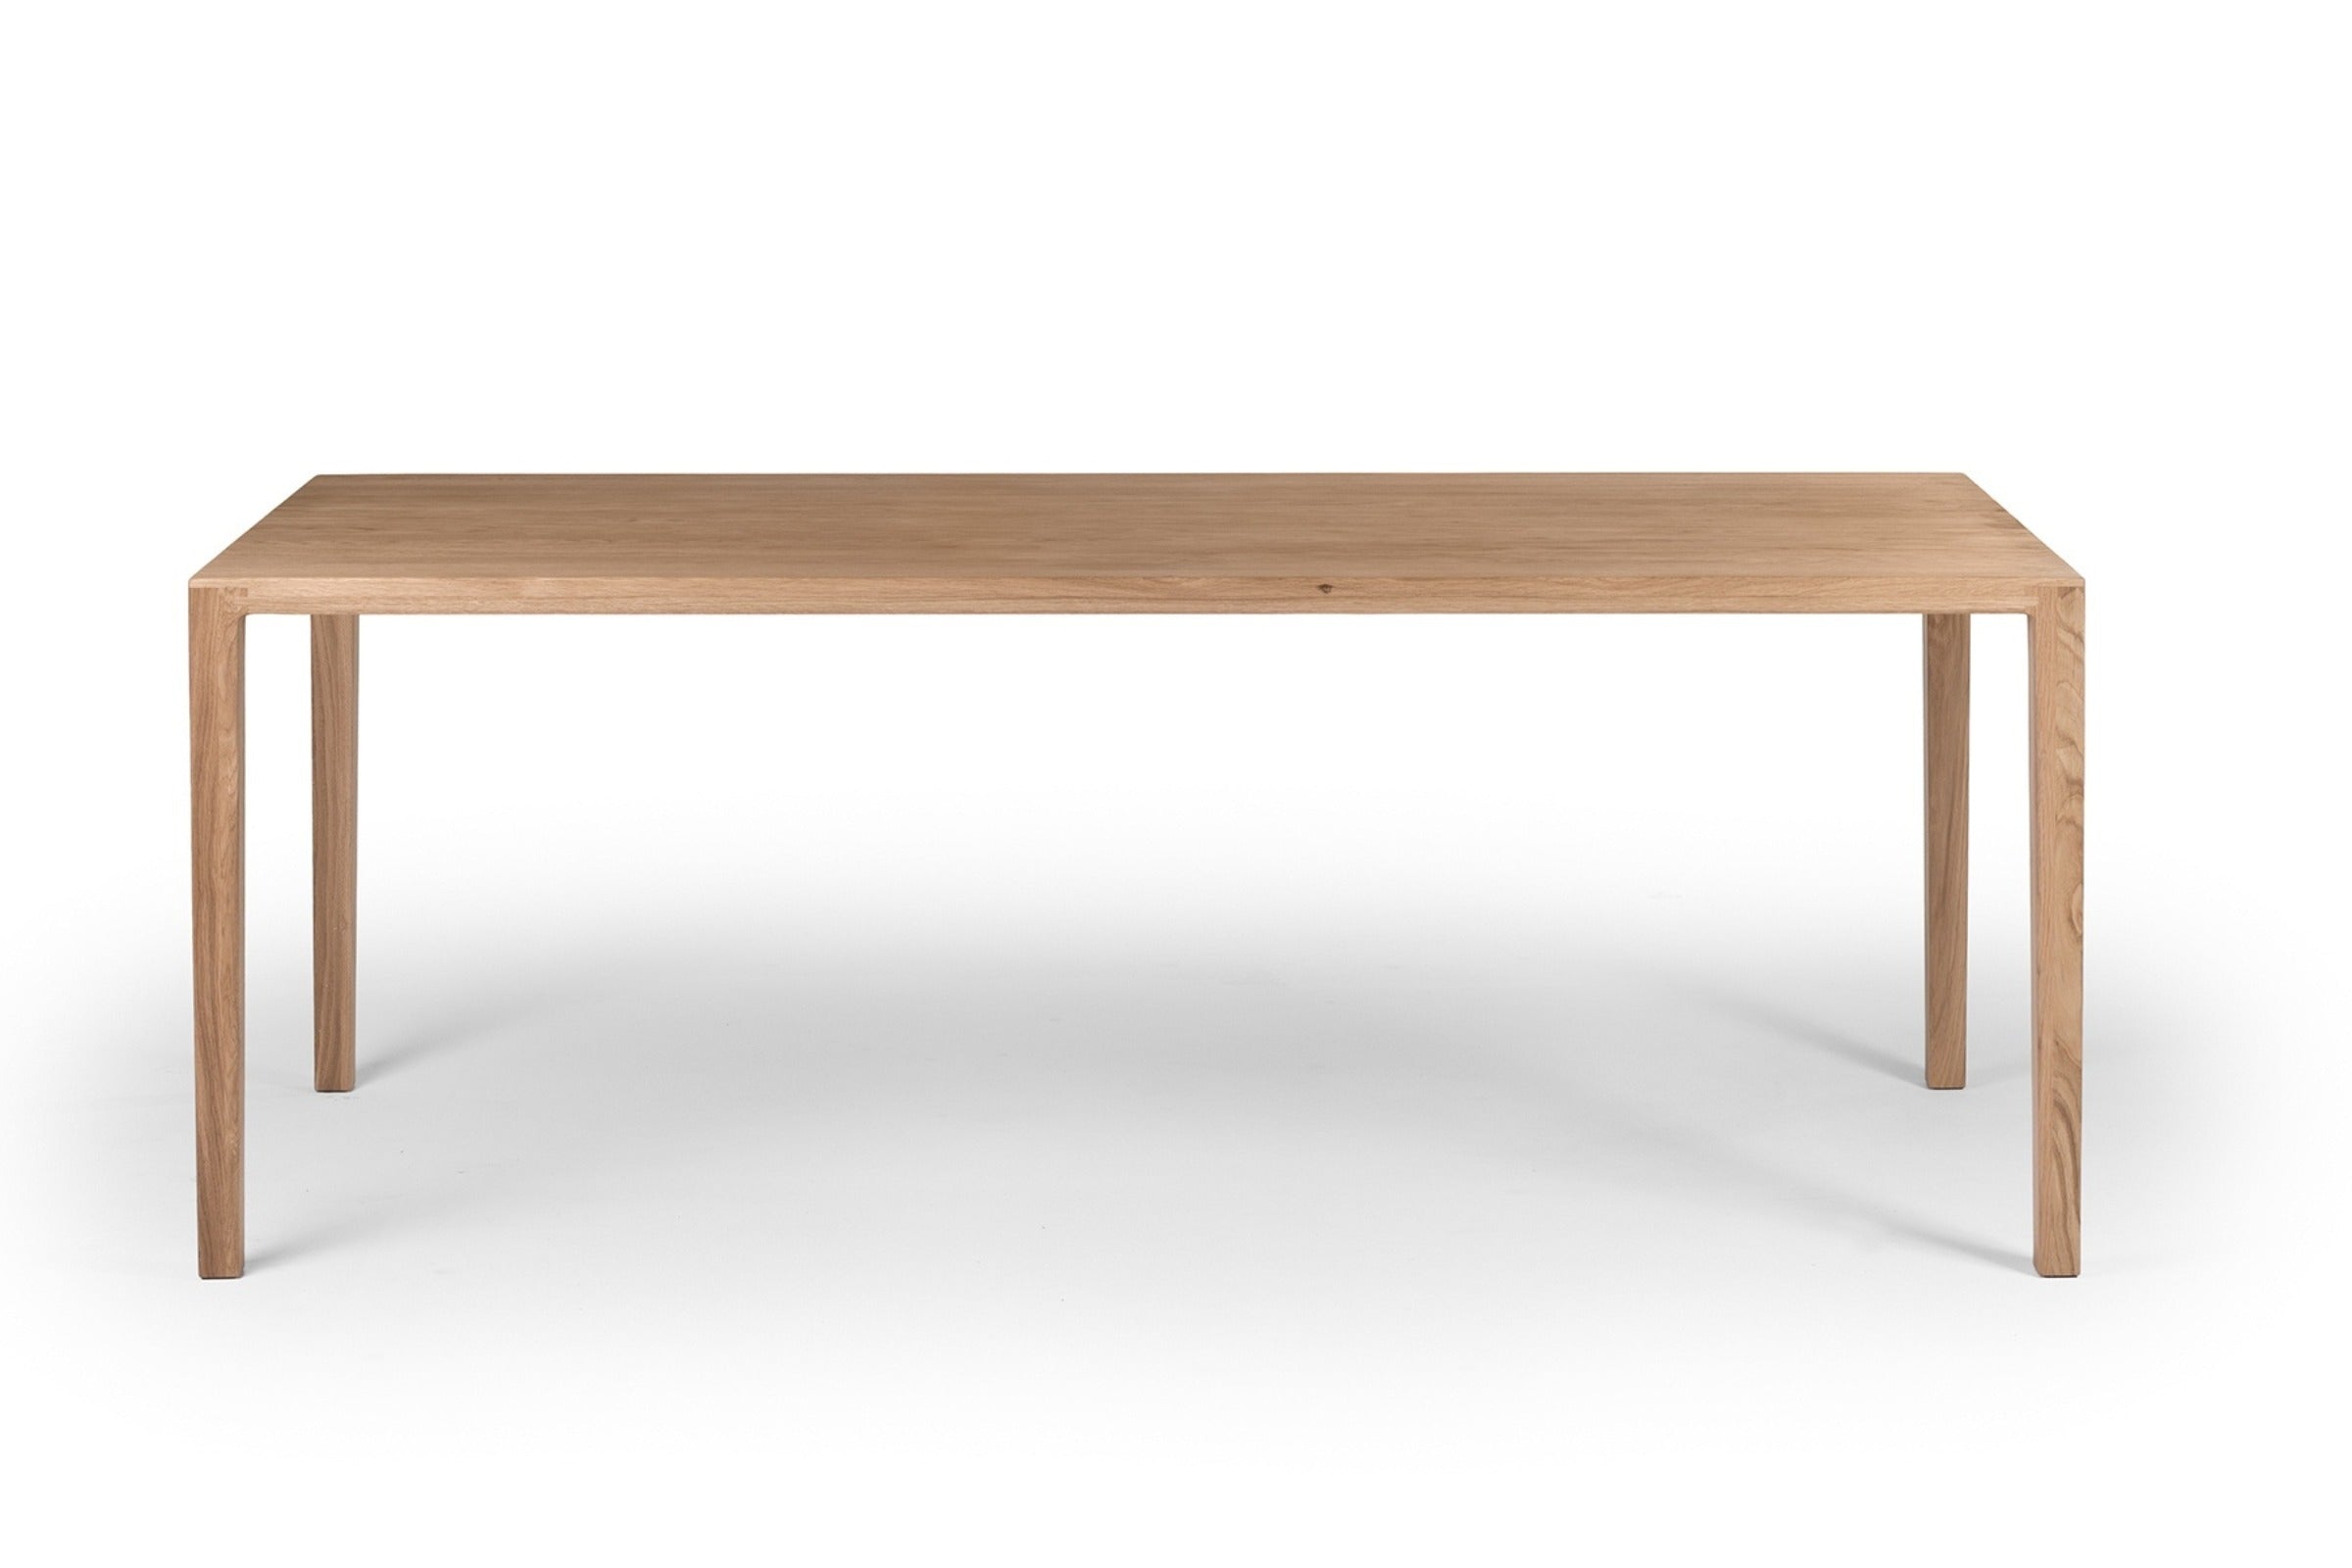 Vorderansicht des COLIN Massivholz Esstisches, der minimalistisches Design mit schlanker Tischplatte und schlichten Beinen zeigt